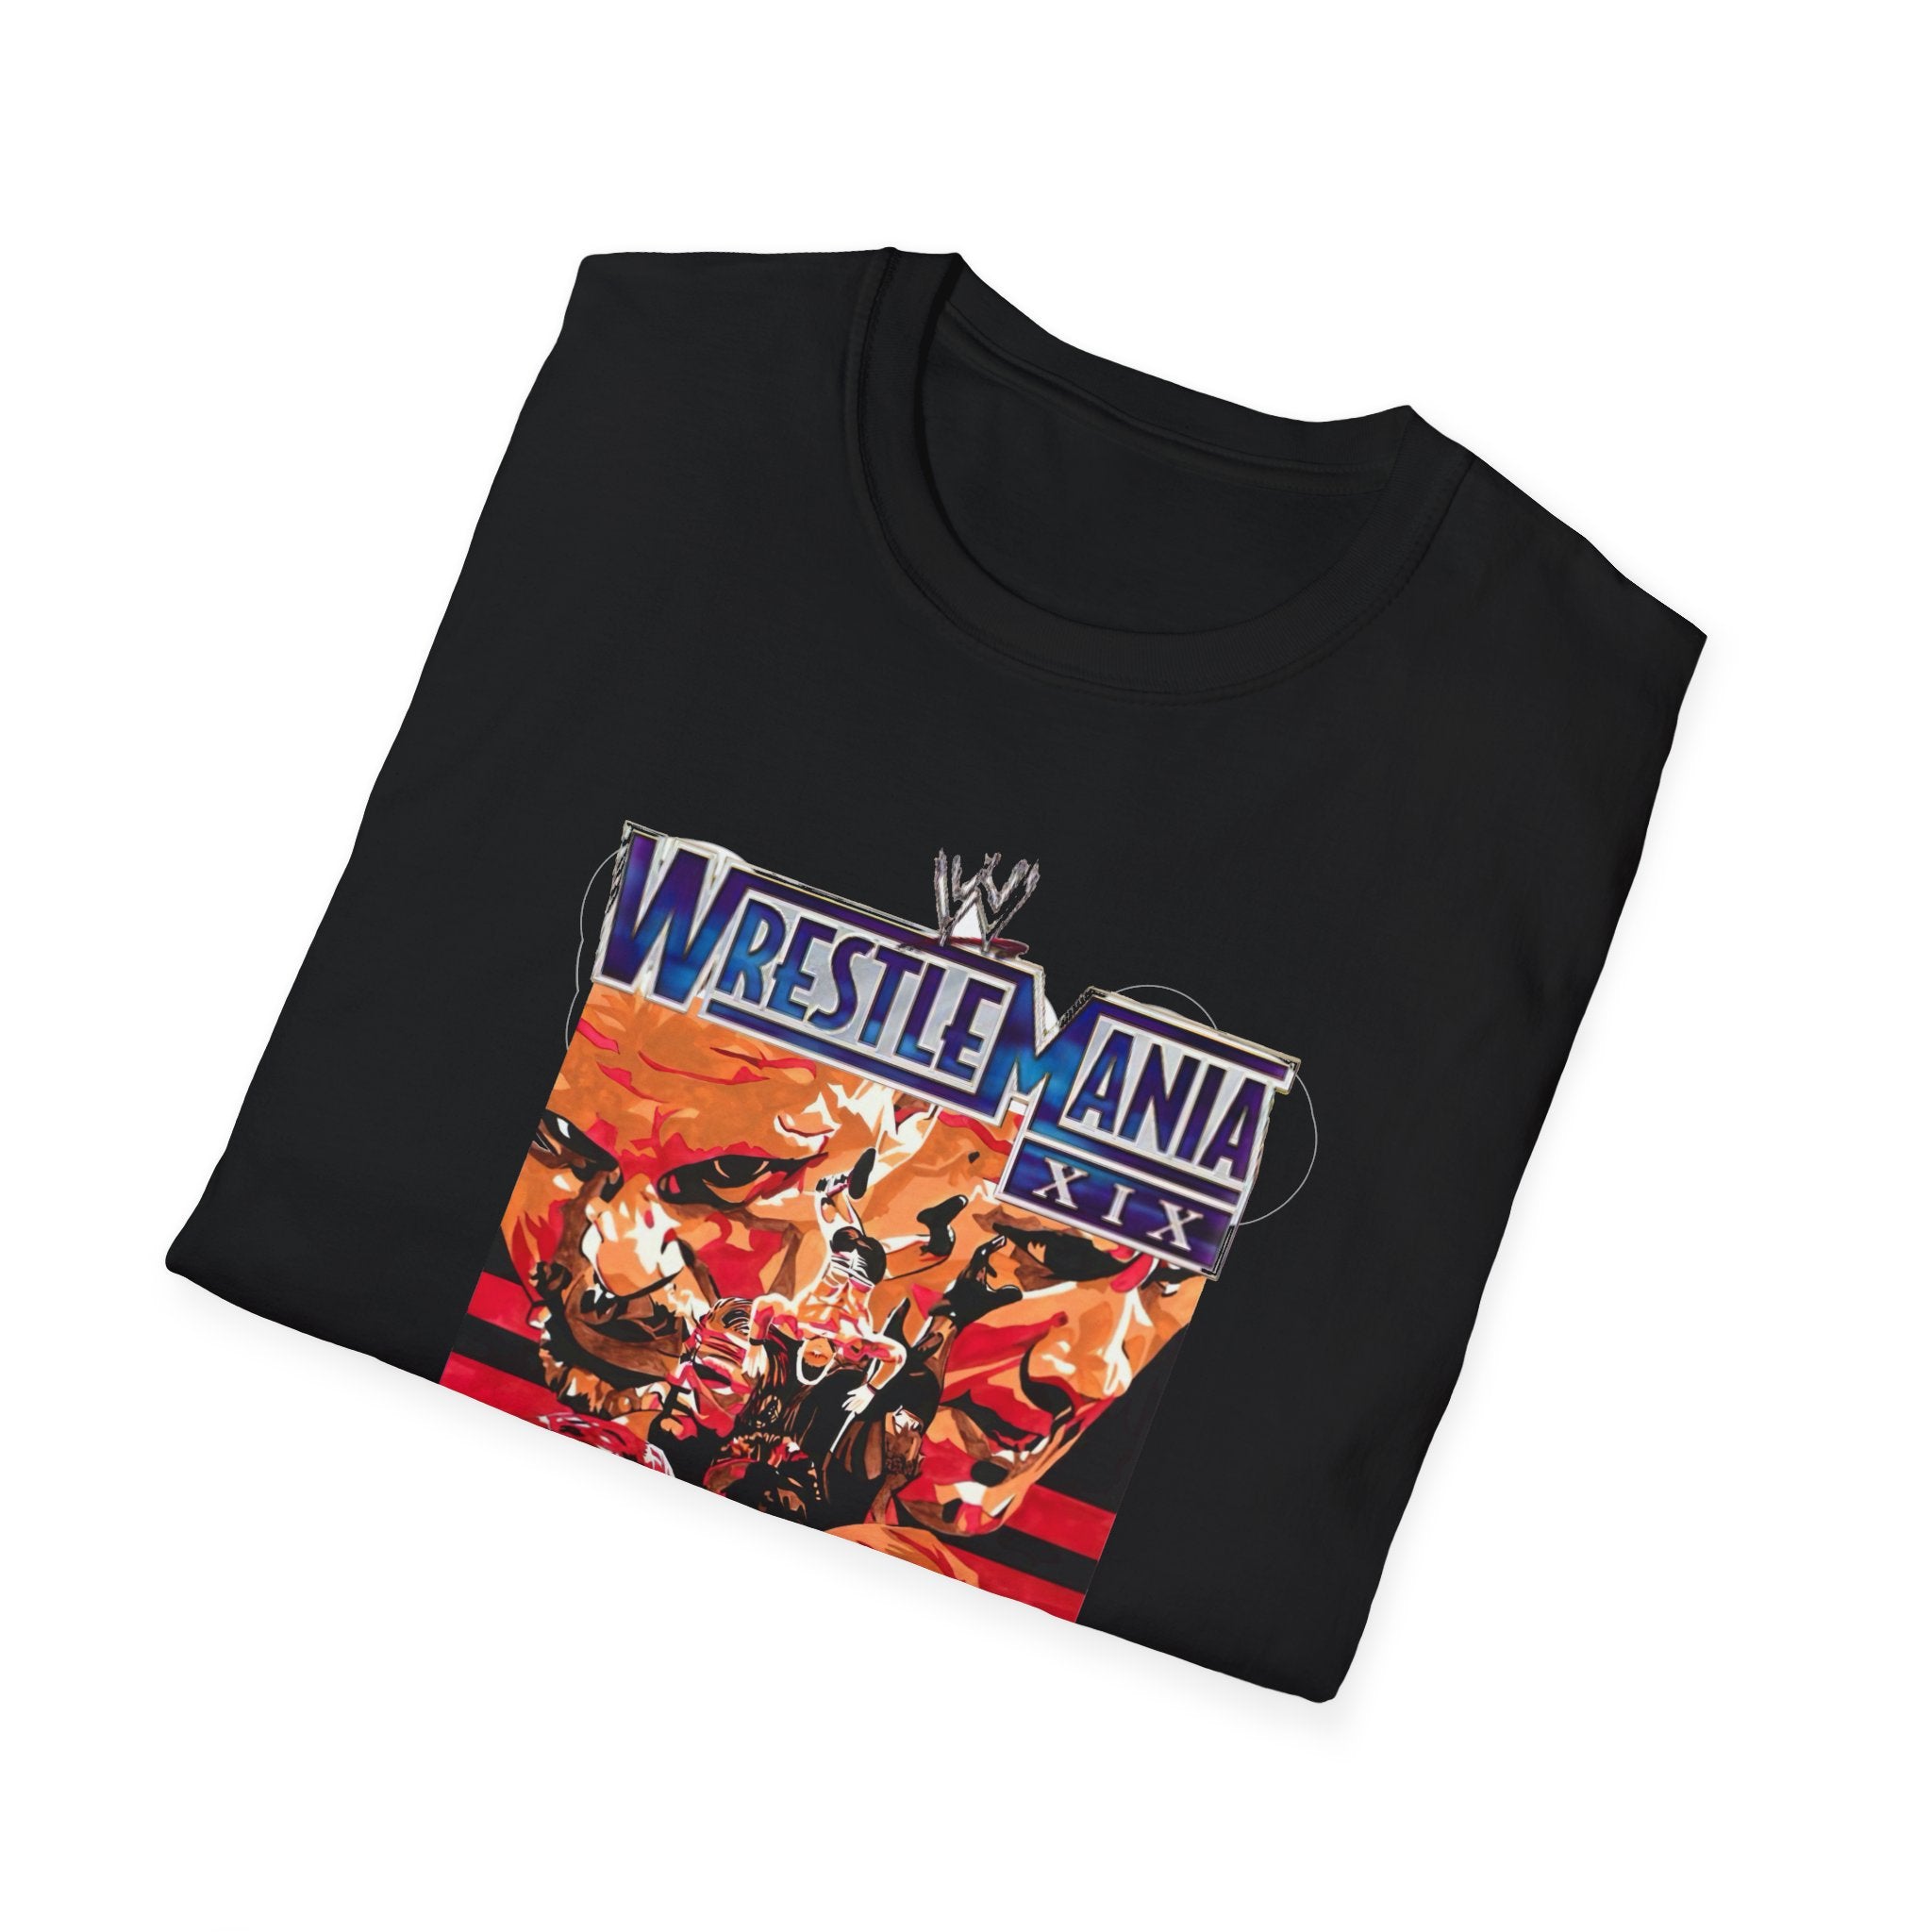 Wrestlemania 19 T-Shirt